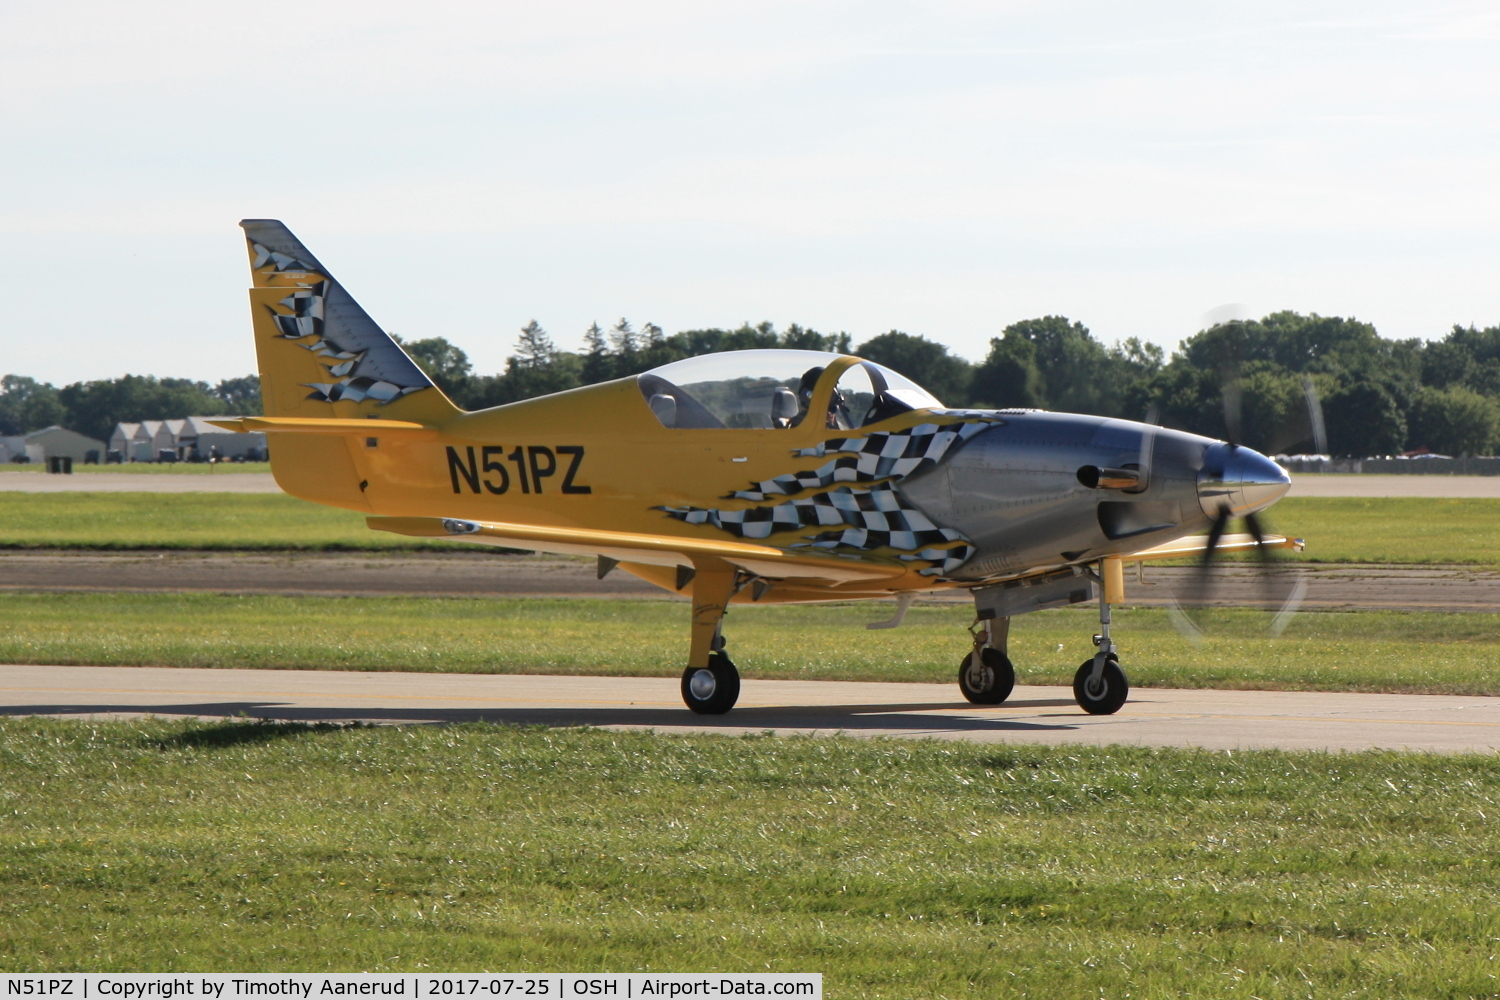 N51PZ, 2002 P Z Corp Legend C/N 131T, 2002 Performance Aircraft Legend, c/n: 131T